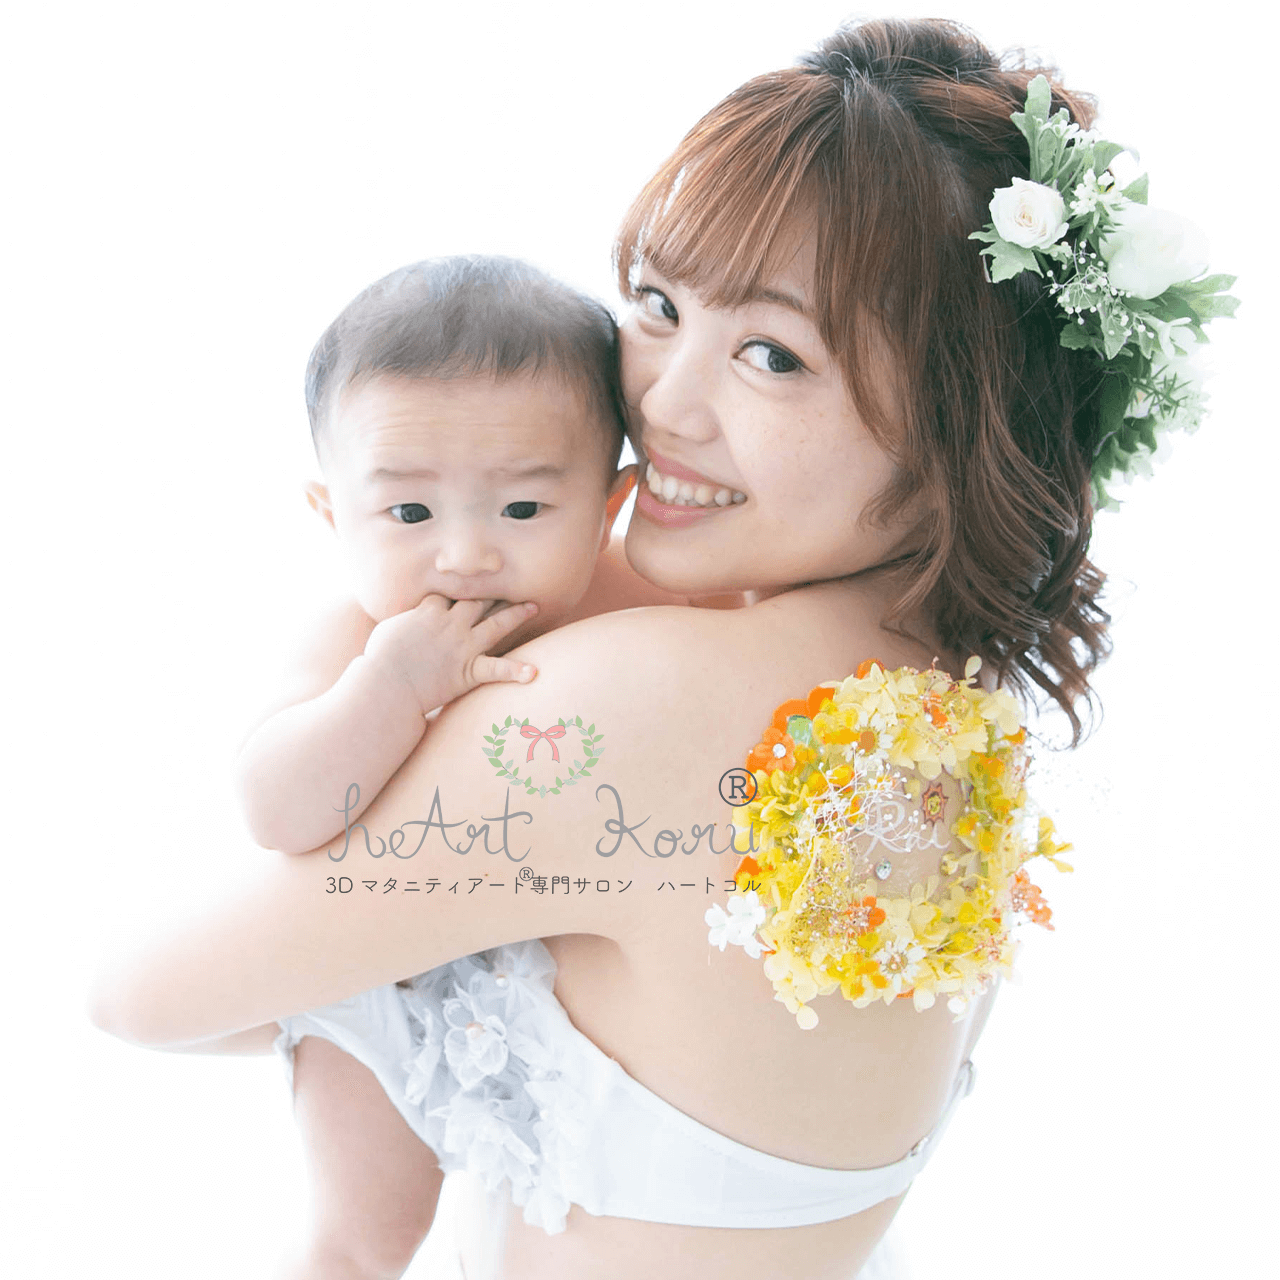 お母さんが赤ちゃんを抱っこしてカメラ目線で撮影している写真。お母さんの肩には、立体のお花のアートである3D授乳ペイントが施されている。